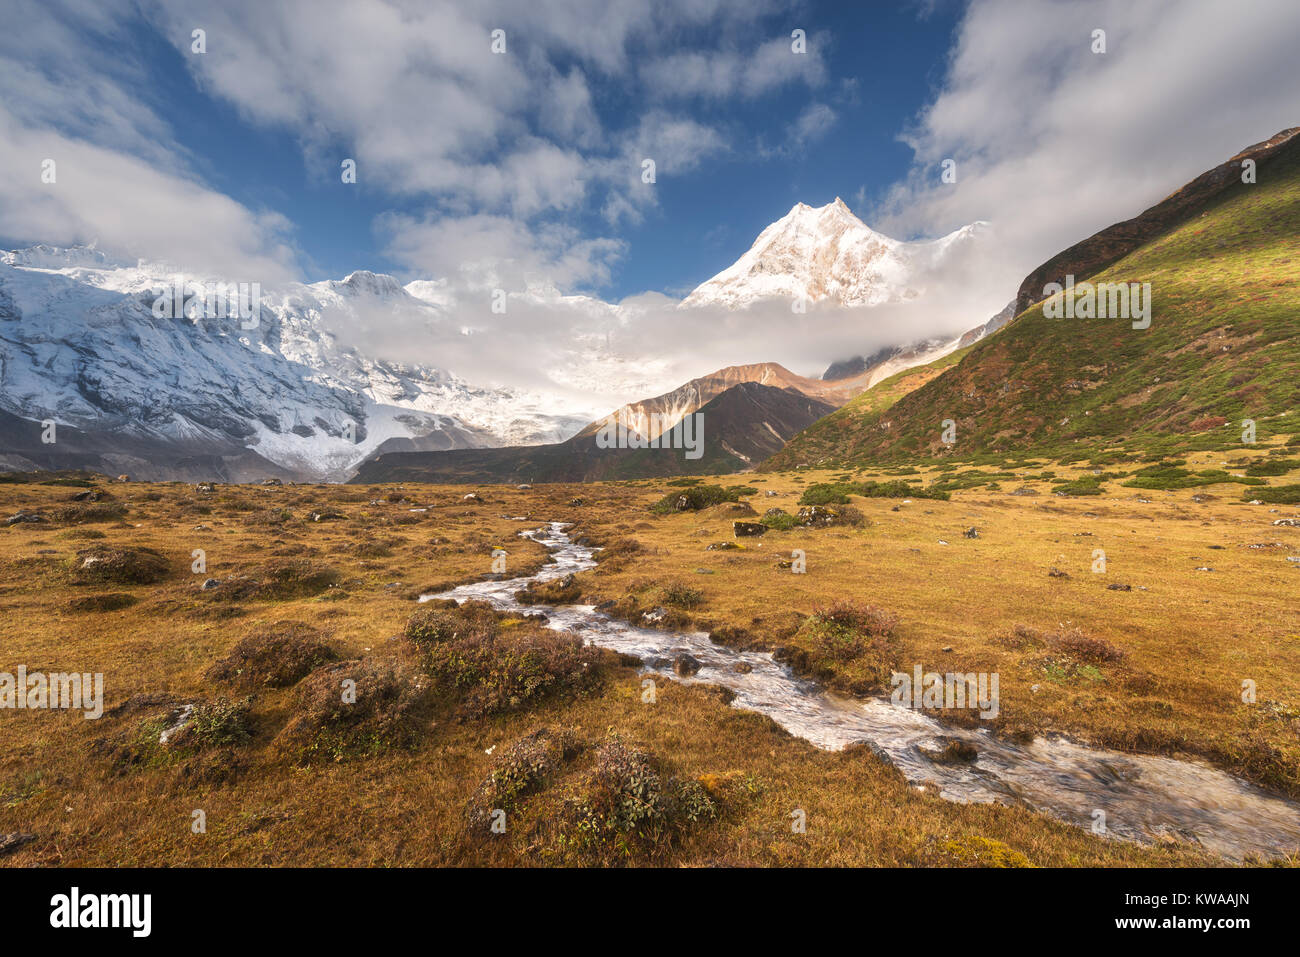 Lo splendido paesaggio di alta montagna con cime coperte di neve, piccolo fiume, giallo Erba e cielo nuvoloso al colorato sunrise. Valle di montagna. Il Nepal. Foto Stock